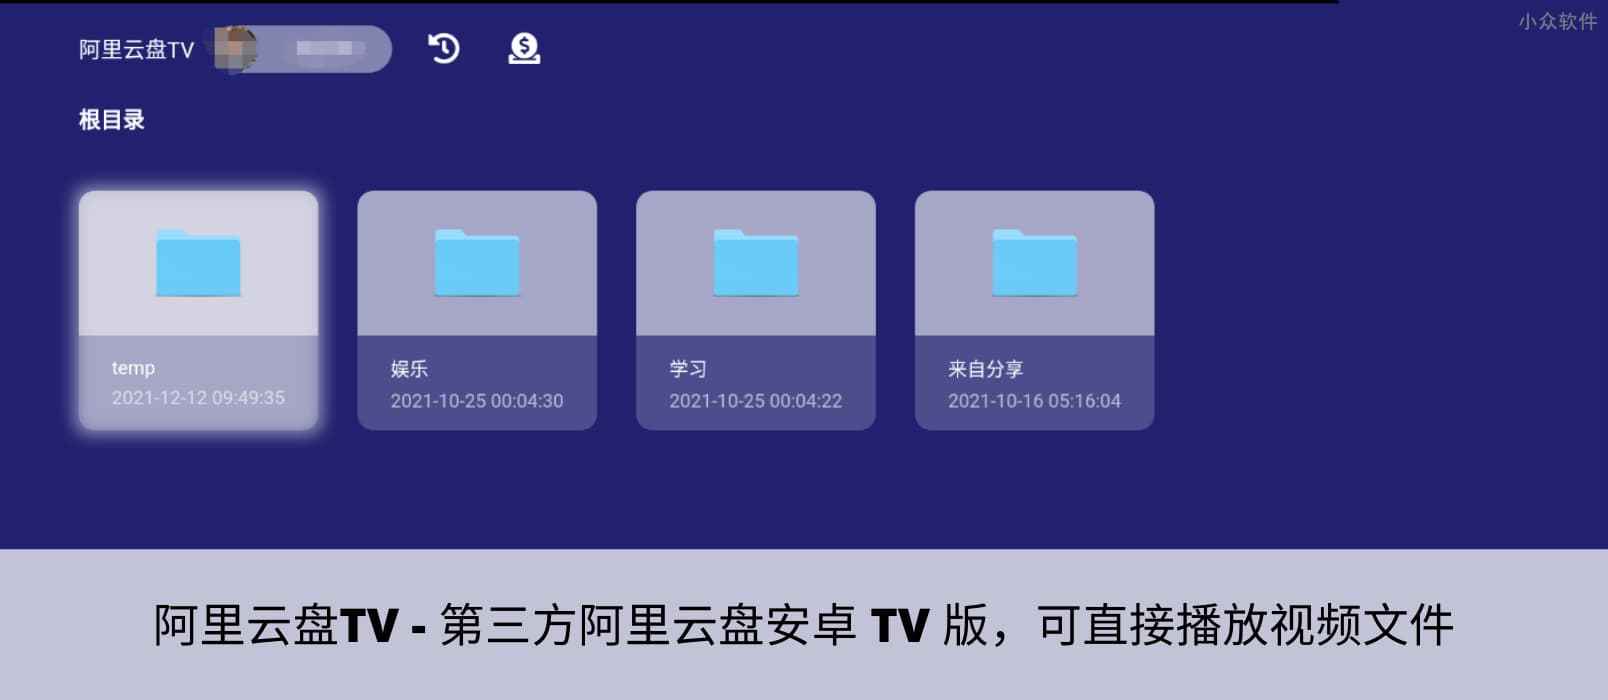 阿里云盘TV - 第三方阿里云盘安卓 TV 版，可直接播放视频文件